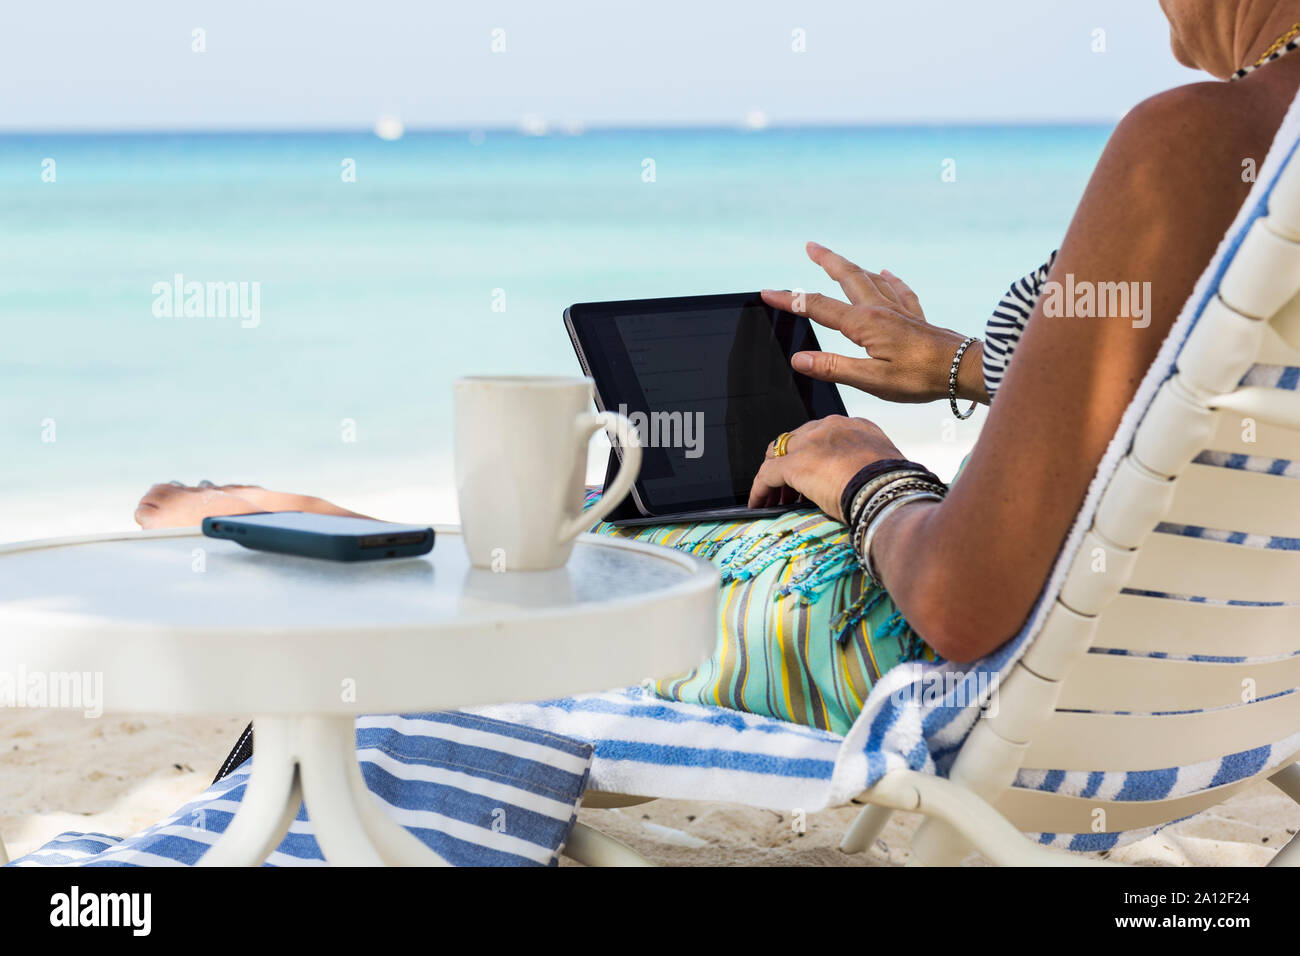 Femme adulte executive en utilisant un ordinateur portable sur la plage, l'île Grand Cayman Banque D'Images